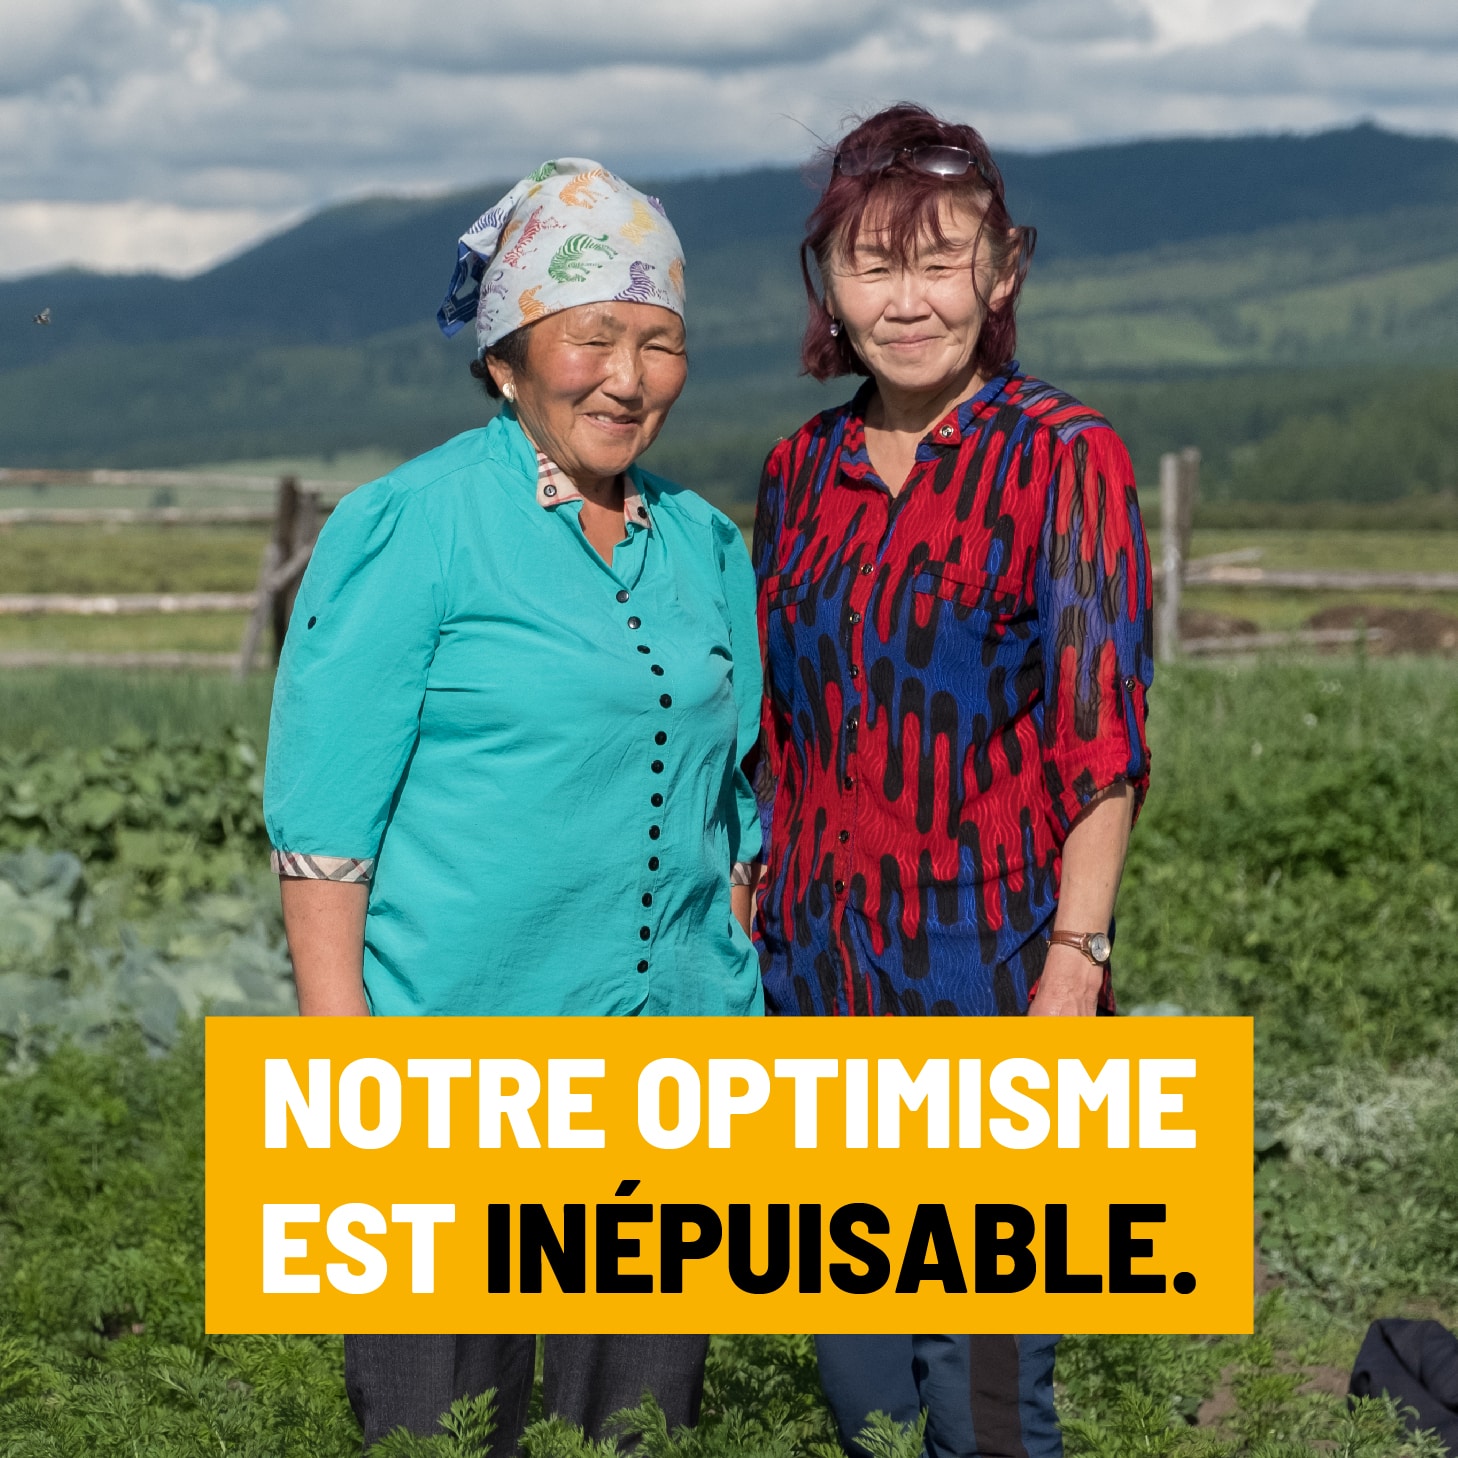 Visuel de campagne de don Geres "notre optimisme est inépuisable"